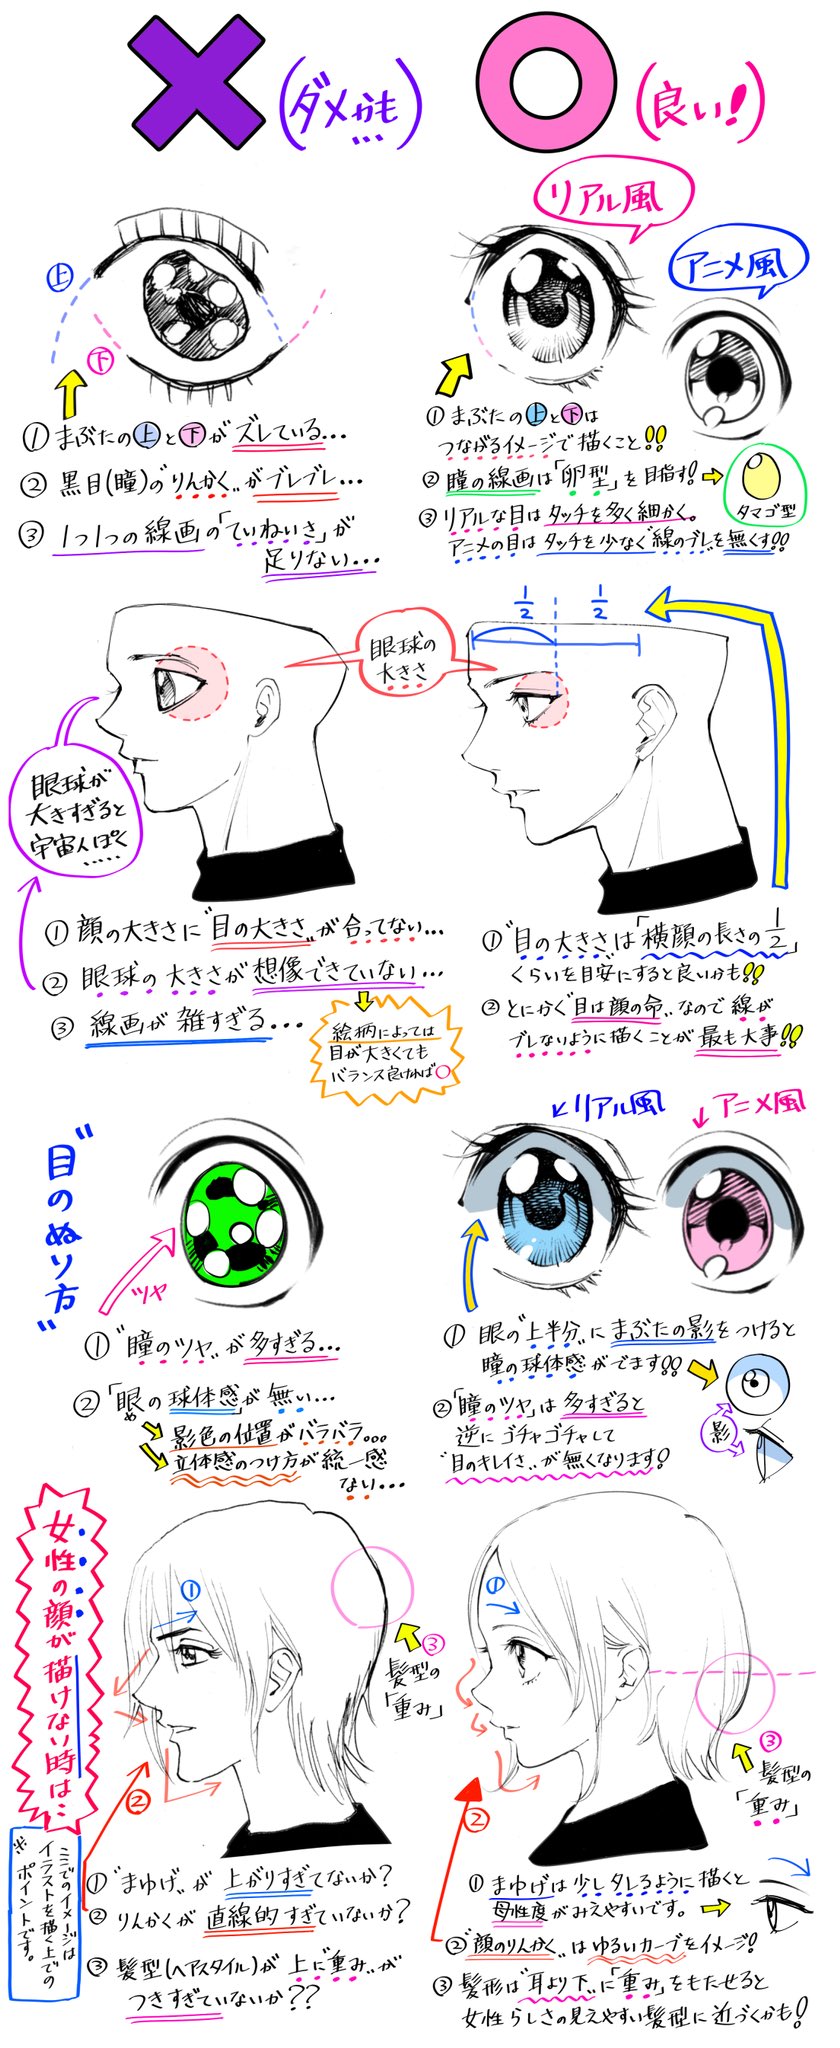 吉村拓也 イラスト講座 Twitterissa 目の描き方 男と女 リアル眼とアニメ眼 を 描きたいときの ダメなこと と 良いこと